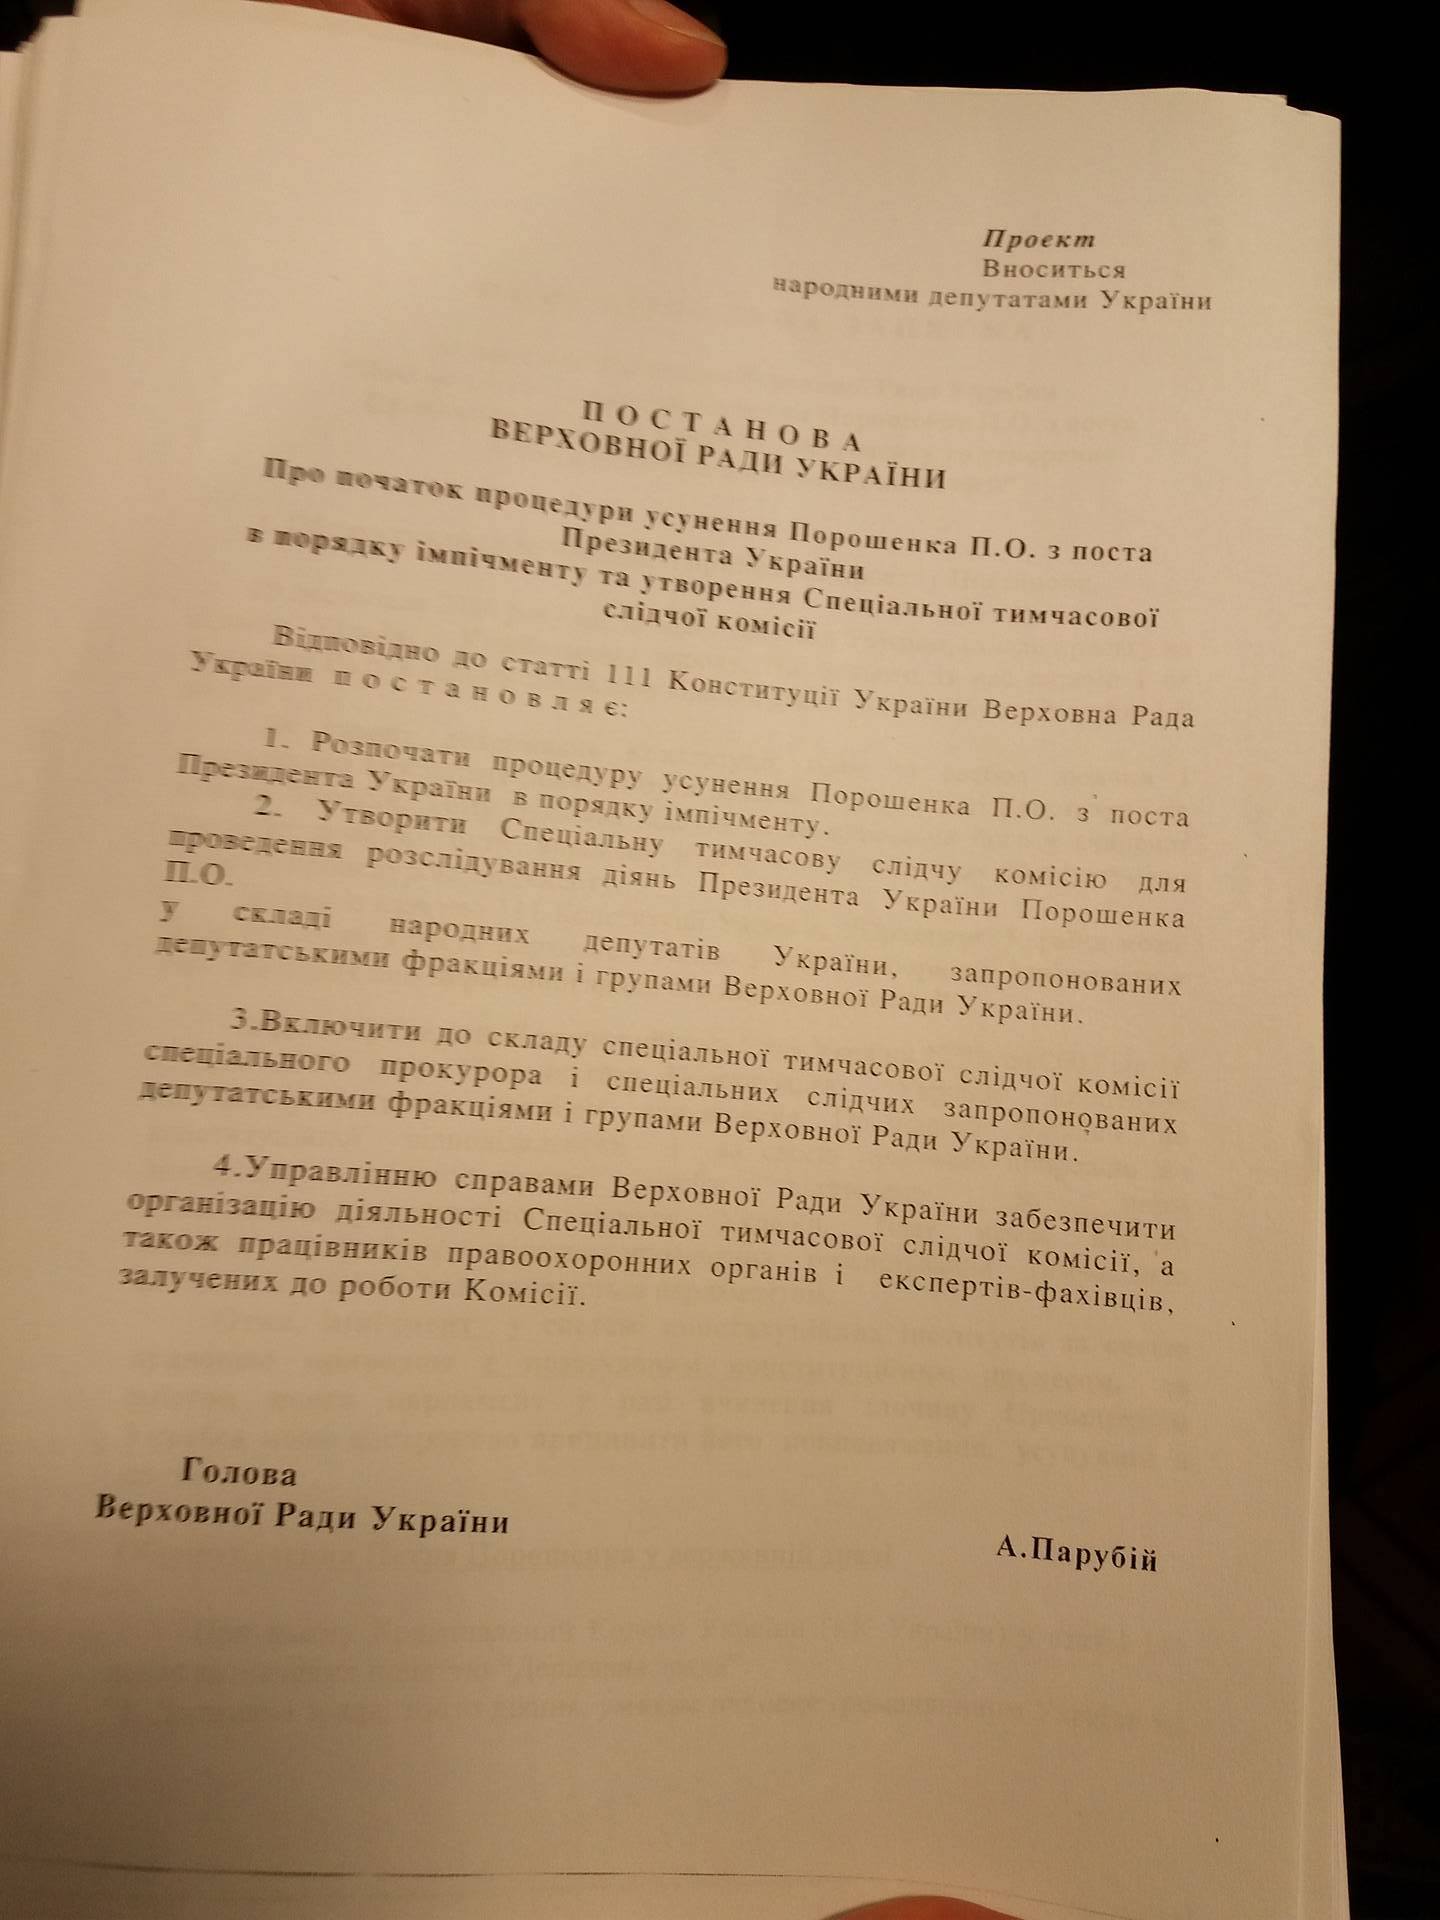 проект постановы про импичмент Порошенко от Тимошенко и Медведчука